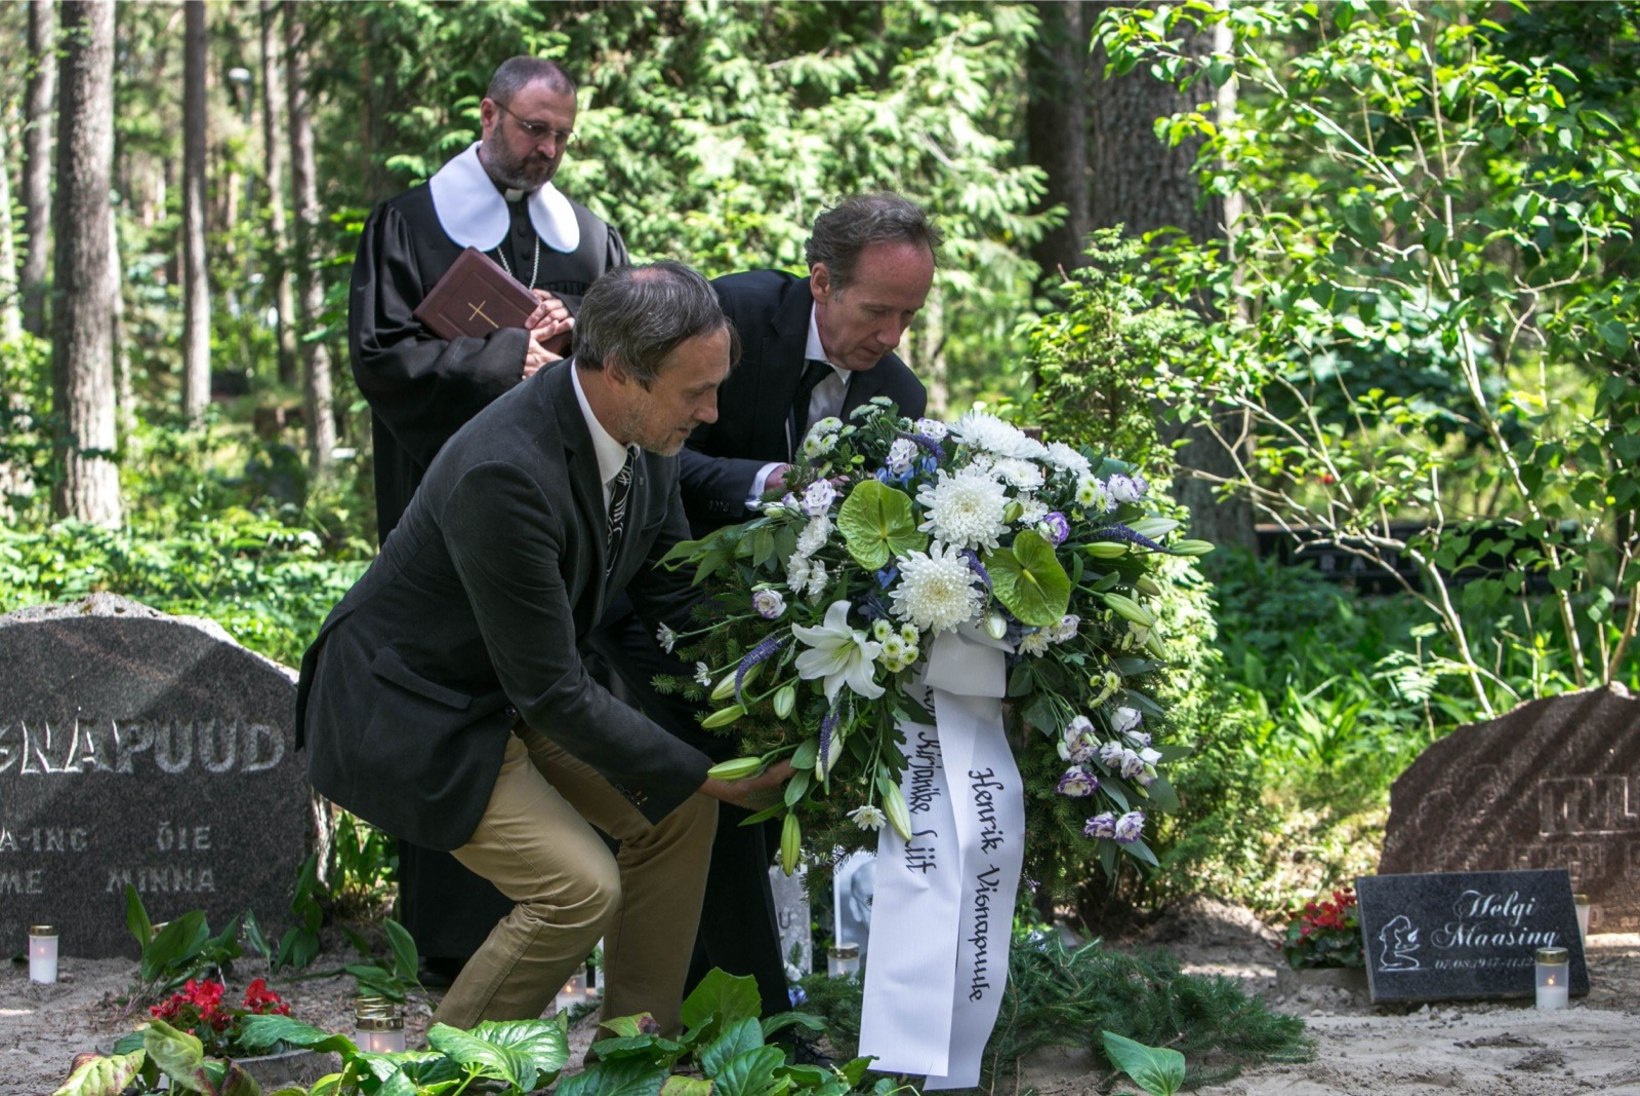 GALERII | Luuletaja Henrik Visnapuu tuhaurn sängitati sinimustvalge lipu sees Metsakalmistule